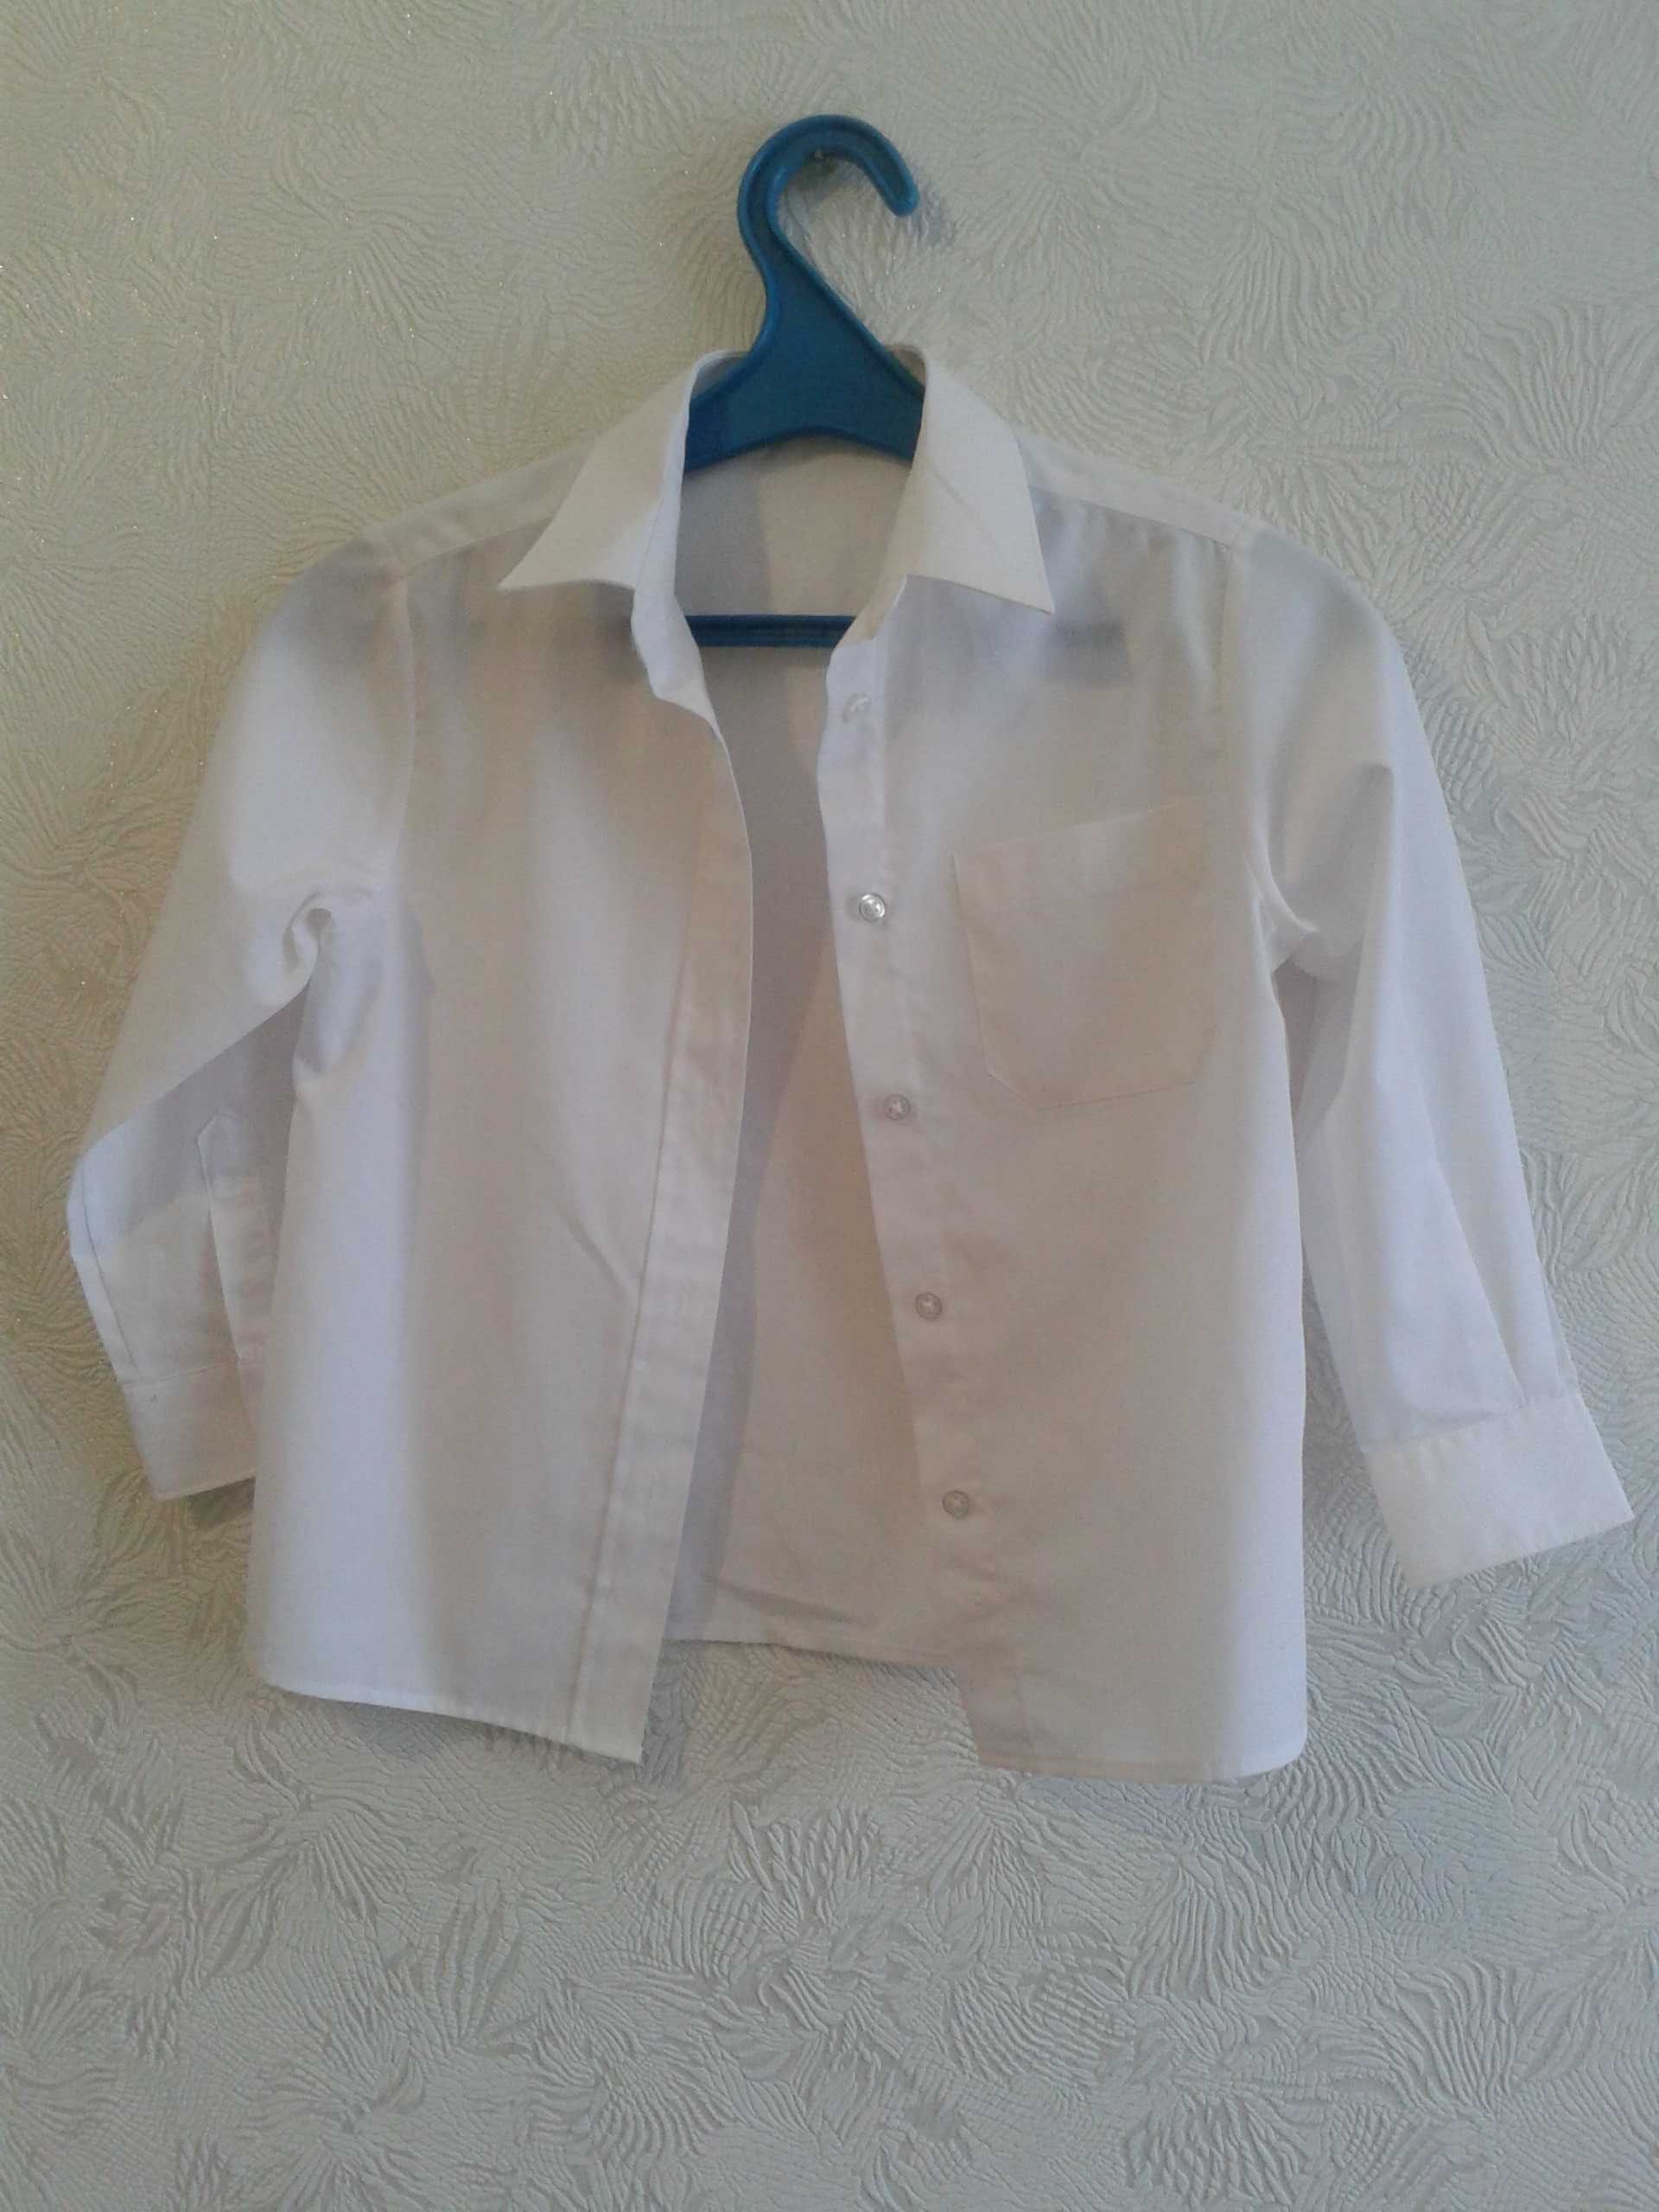 Продам белую блузку сорочку для девочки5-6. 7. лет